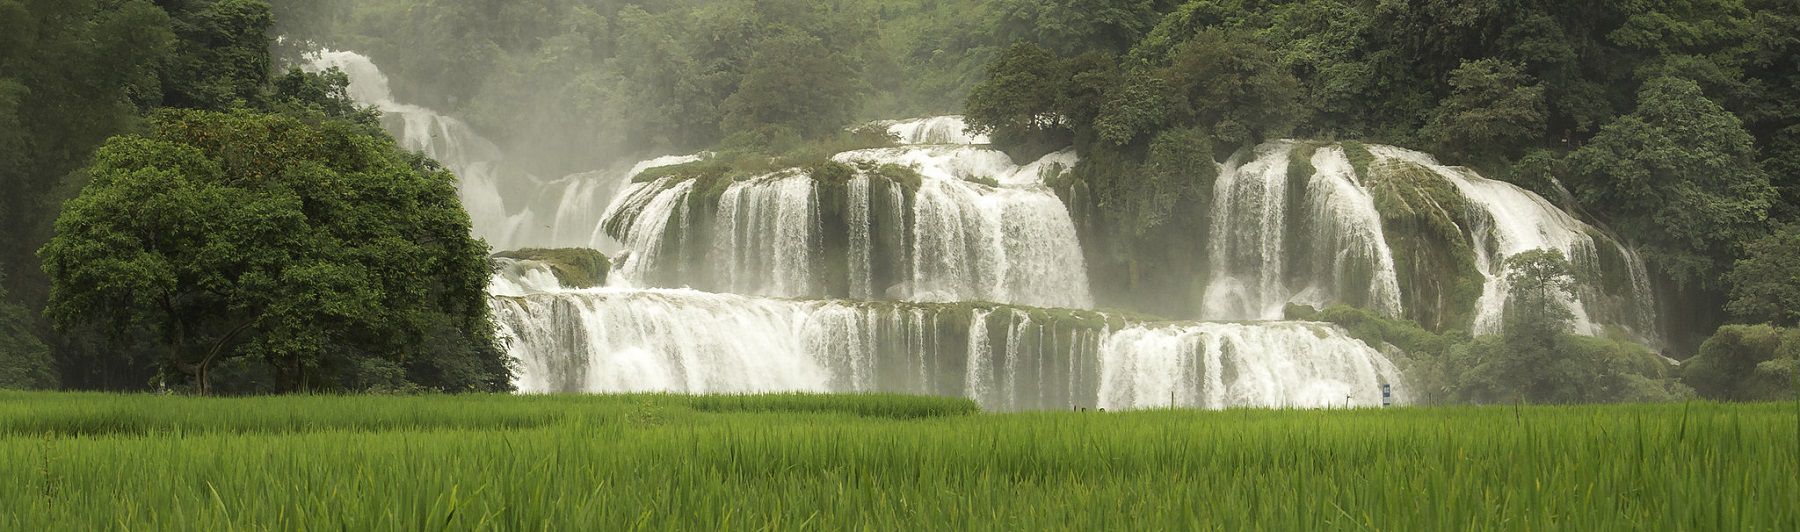 Ban-gioc-waterfall